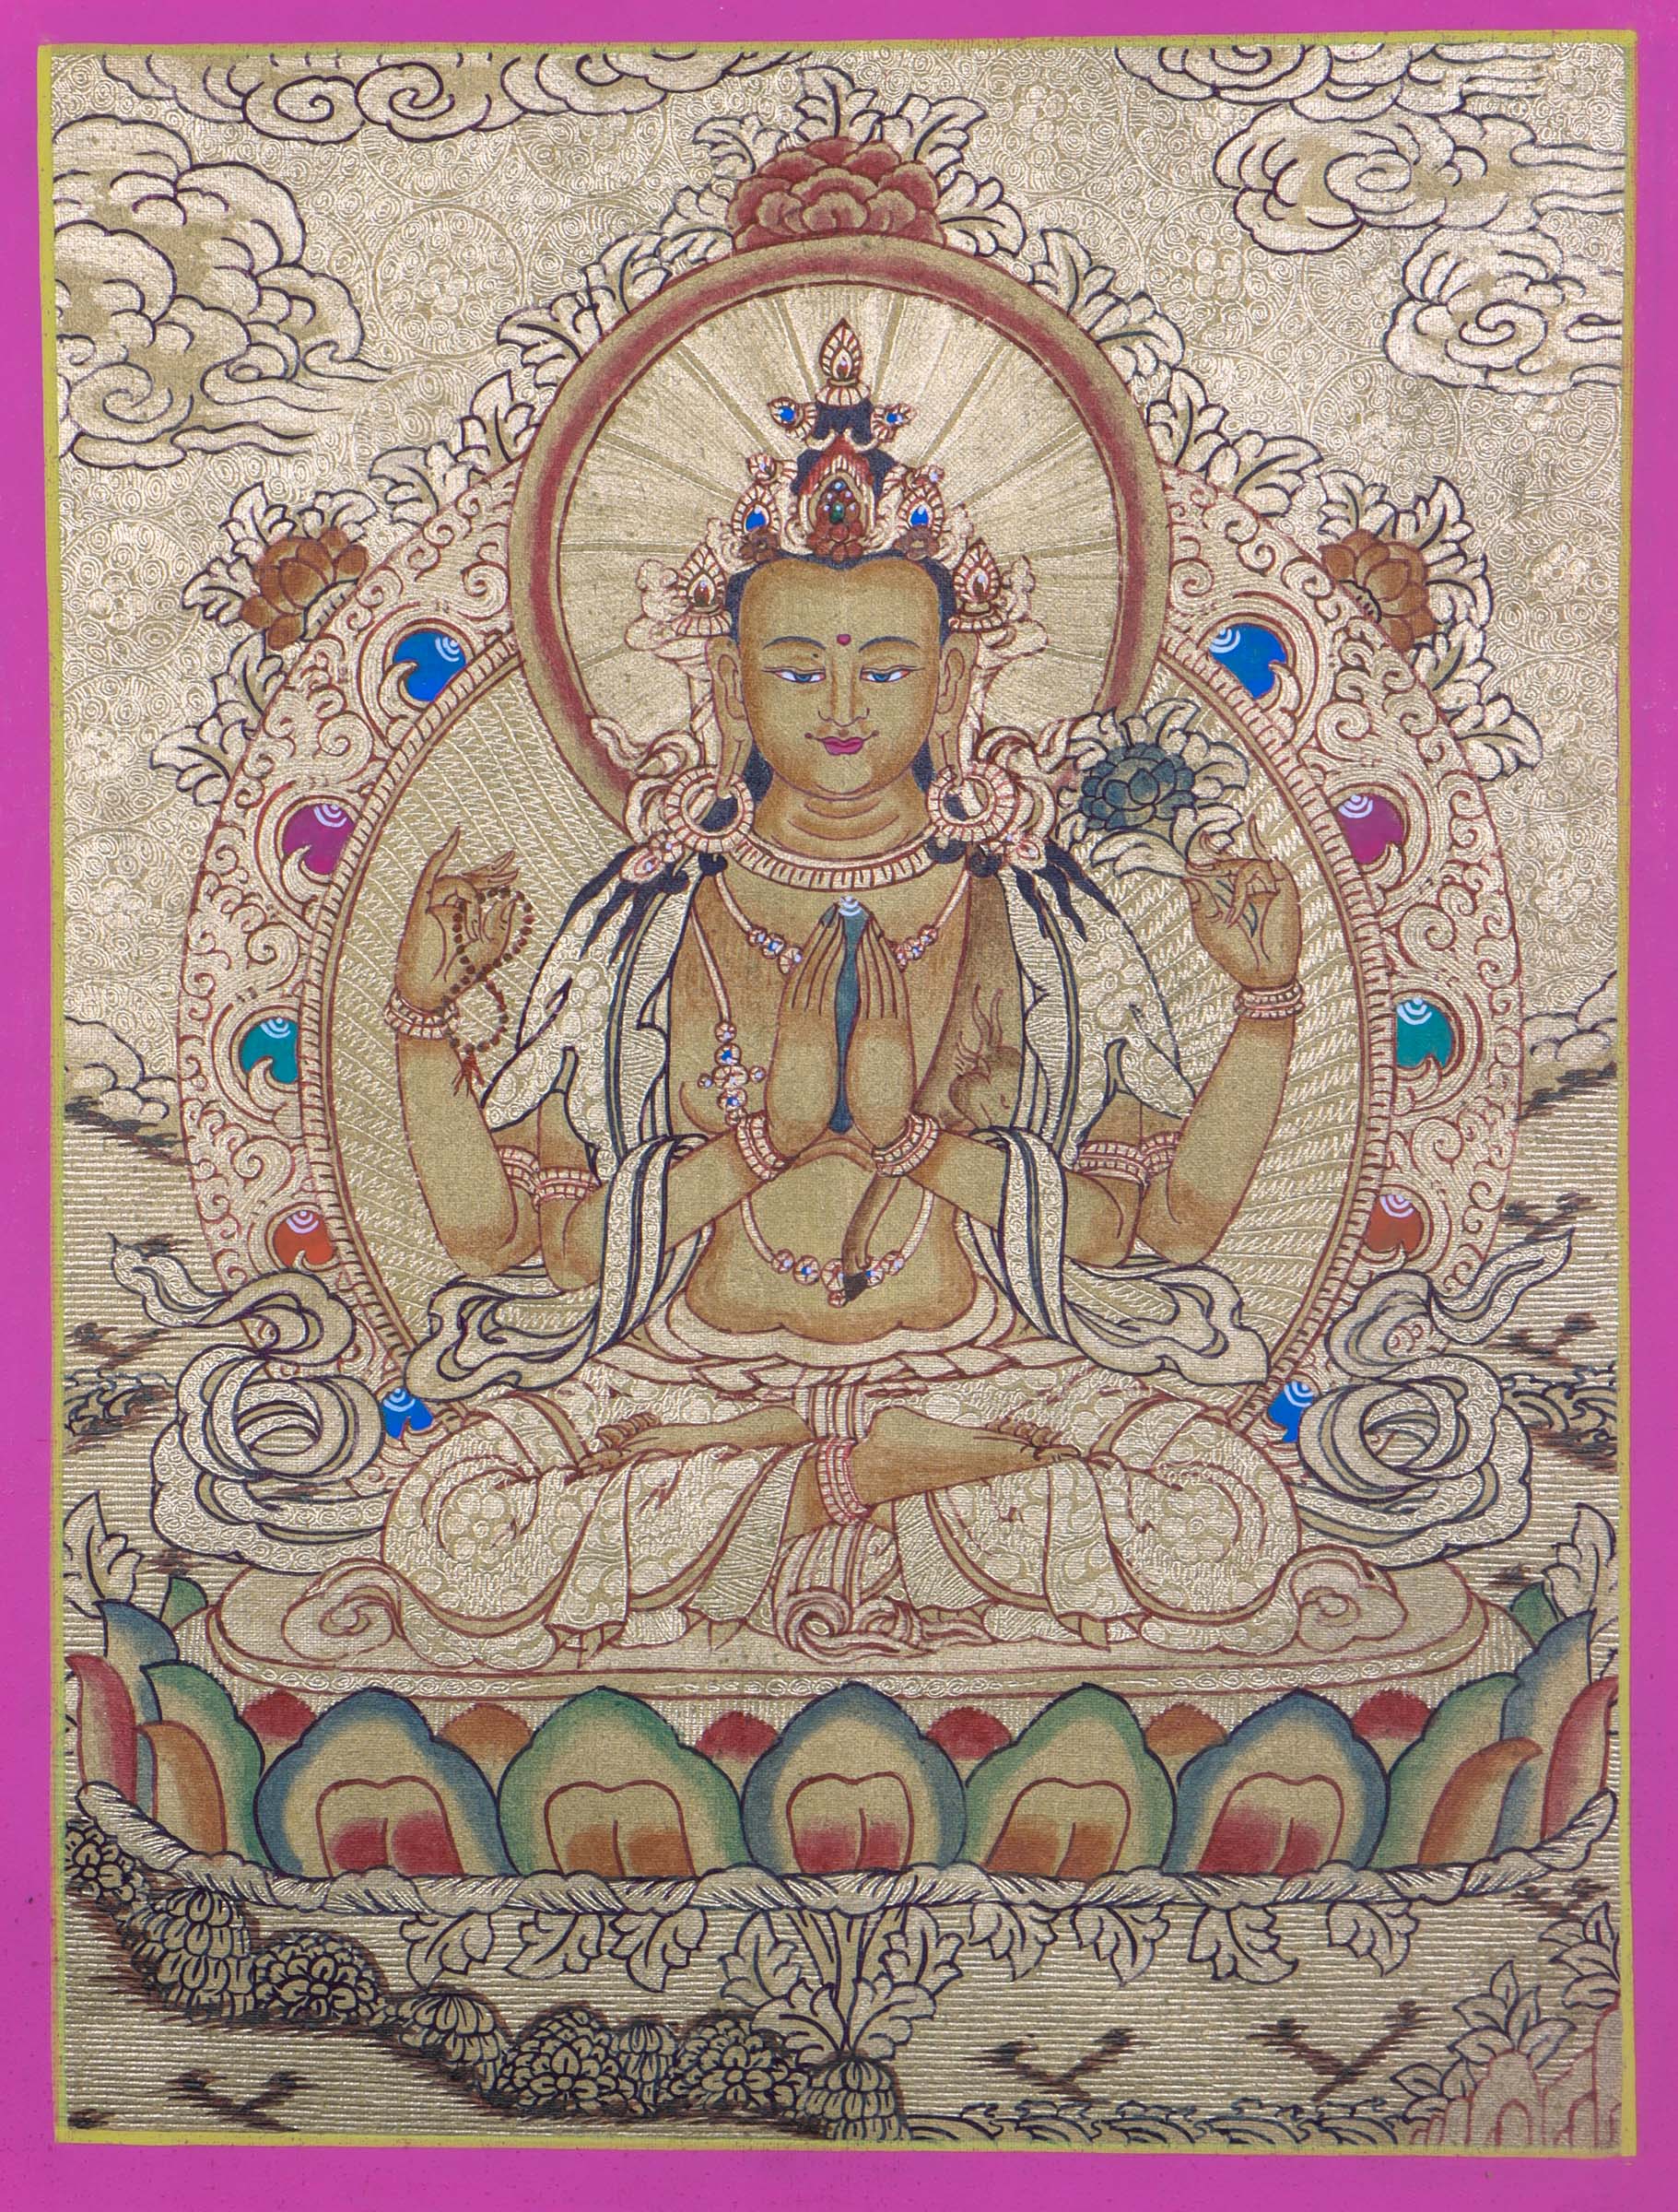 LA-01584Chenrezig Buddhist painting on Gold - Himalayas Shop